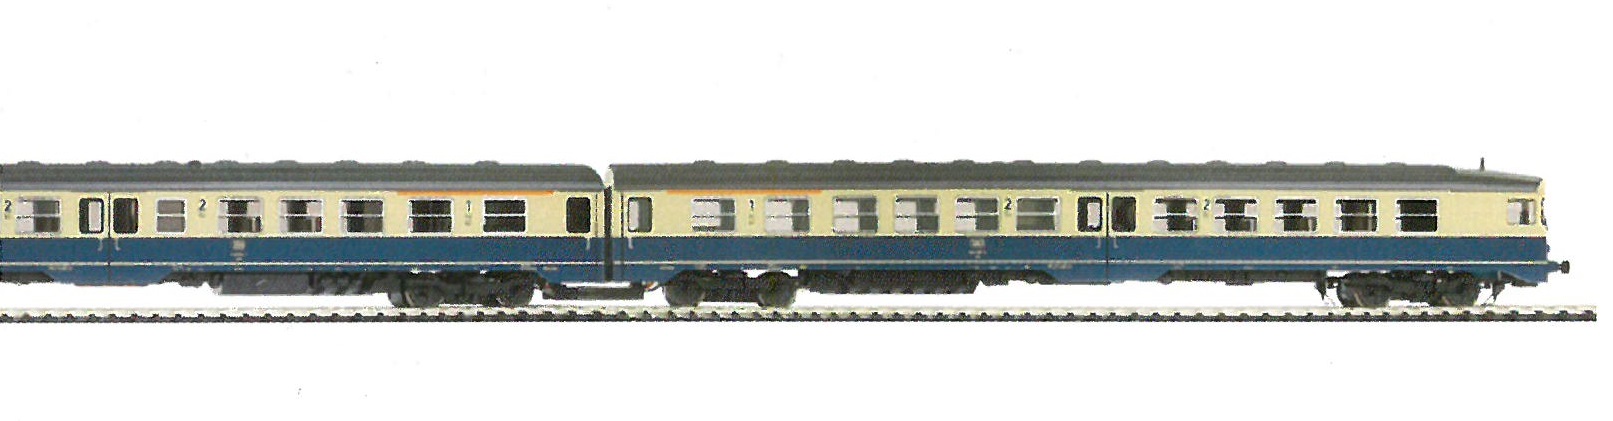 DB 634 607/614 Ep.4 AC digita Umbau-Version mit Luftfeder-Drehgestellen +Nei-Tech, blau/beige